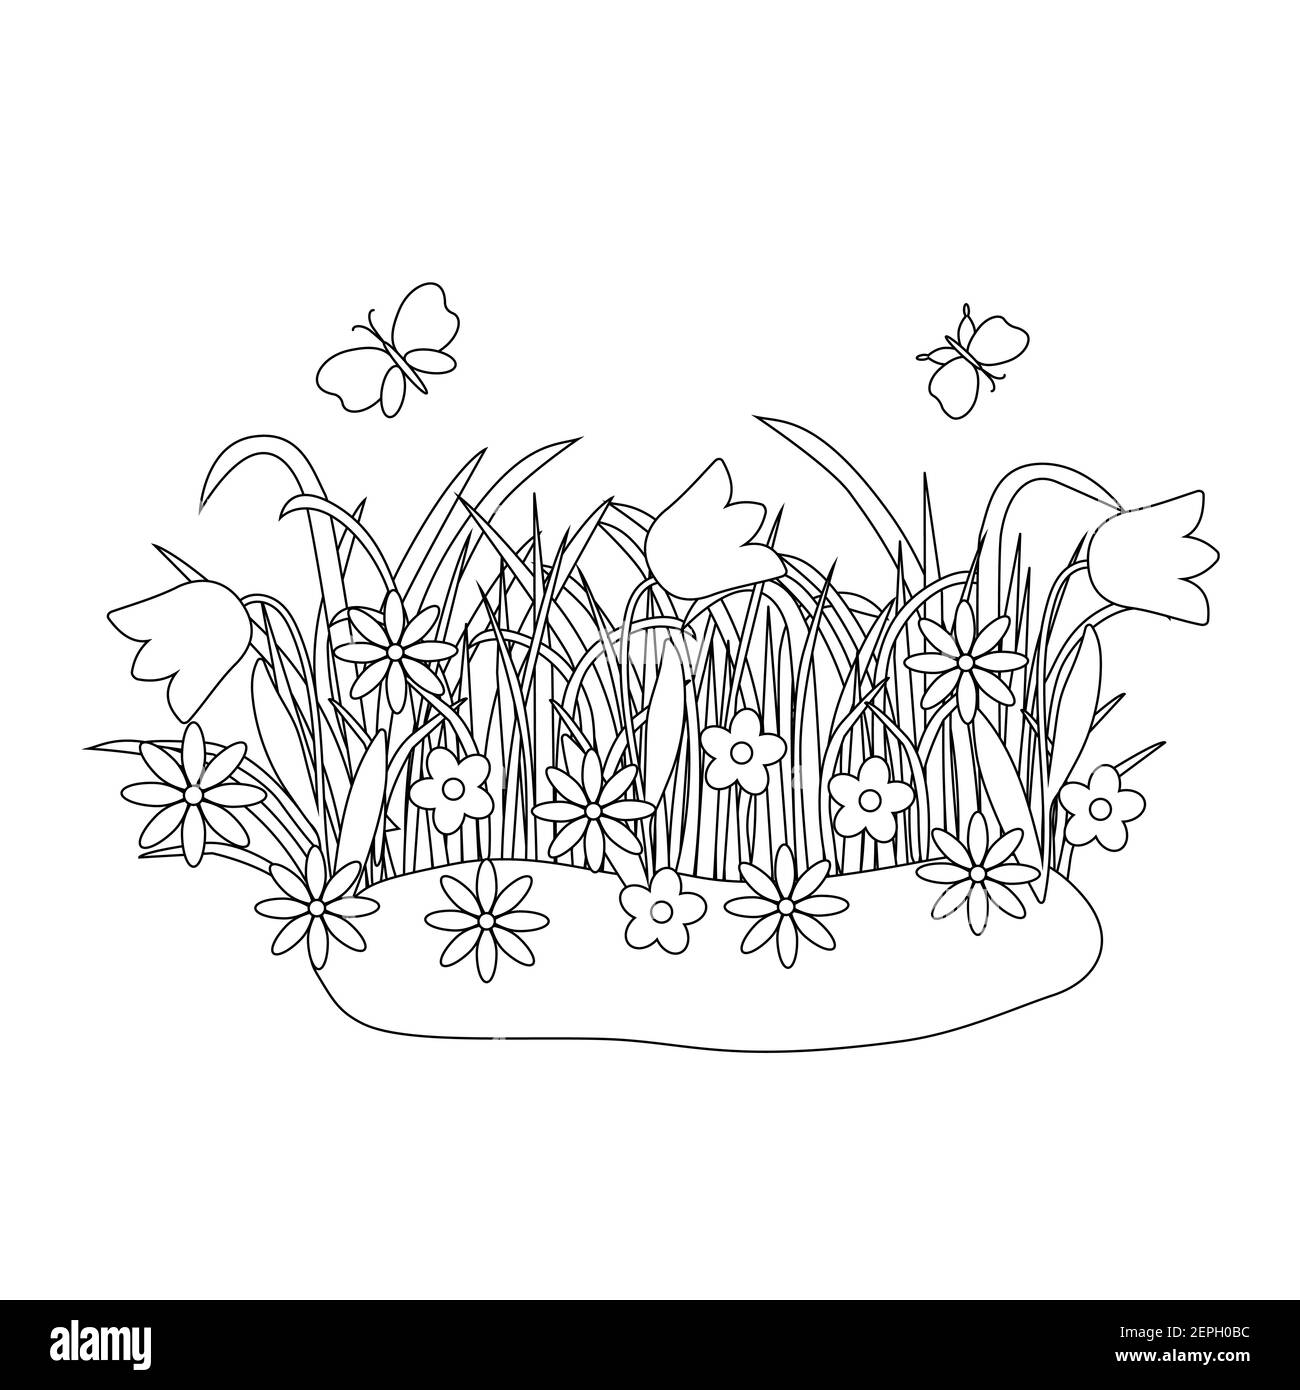 Composizione floreale di Pasqua con farfalle carine, erba primaverile con fiori, illustrazione vettoriale per libro da colorare, foglio di lavoro, fes primavera Illustrazione Vettoriale